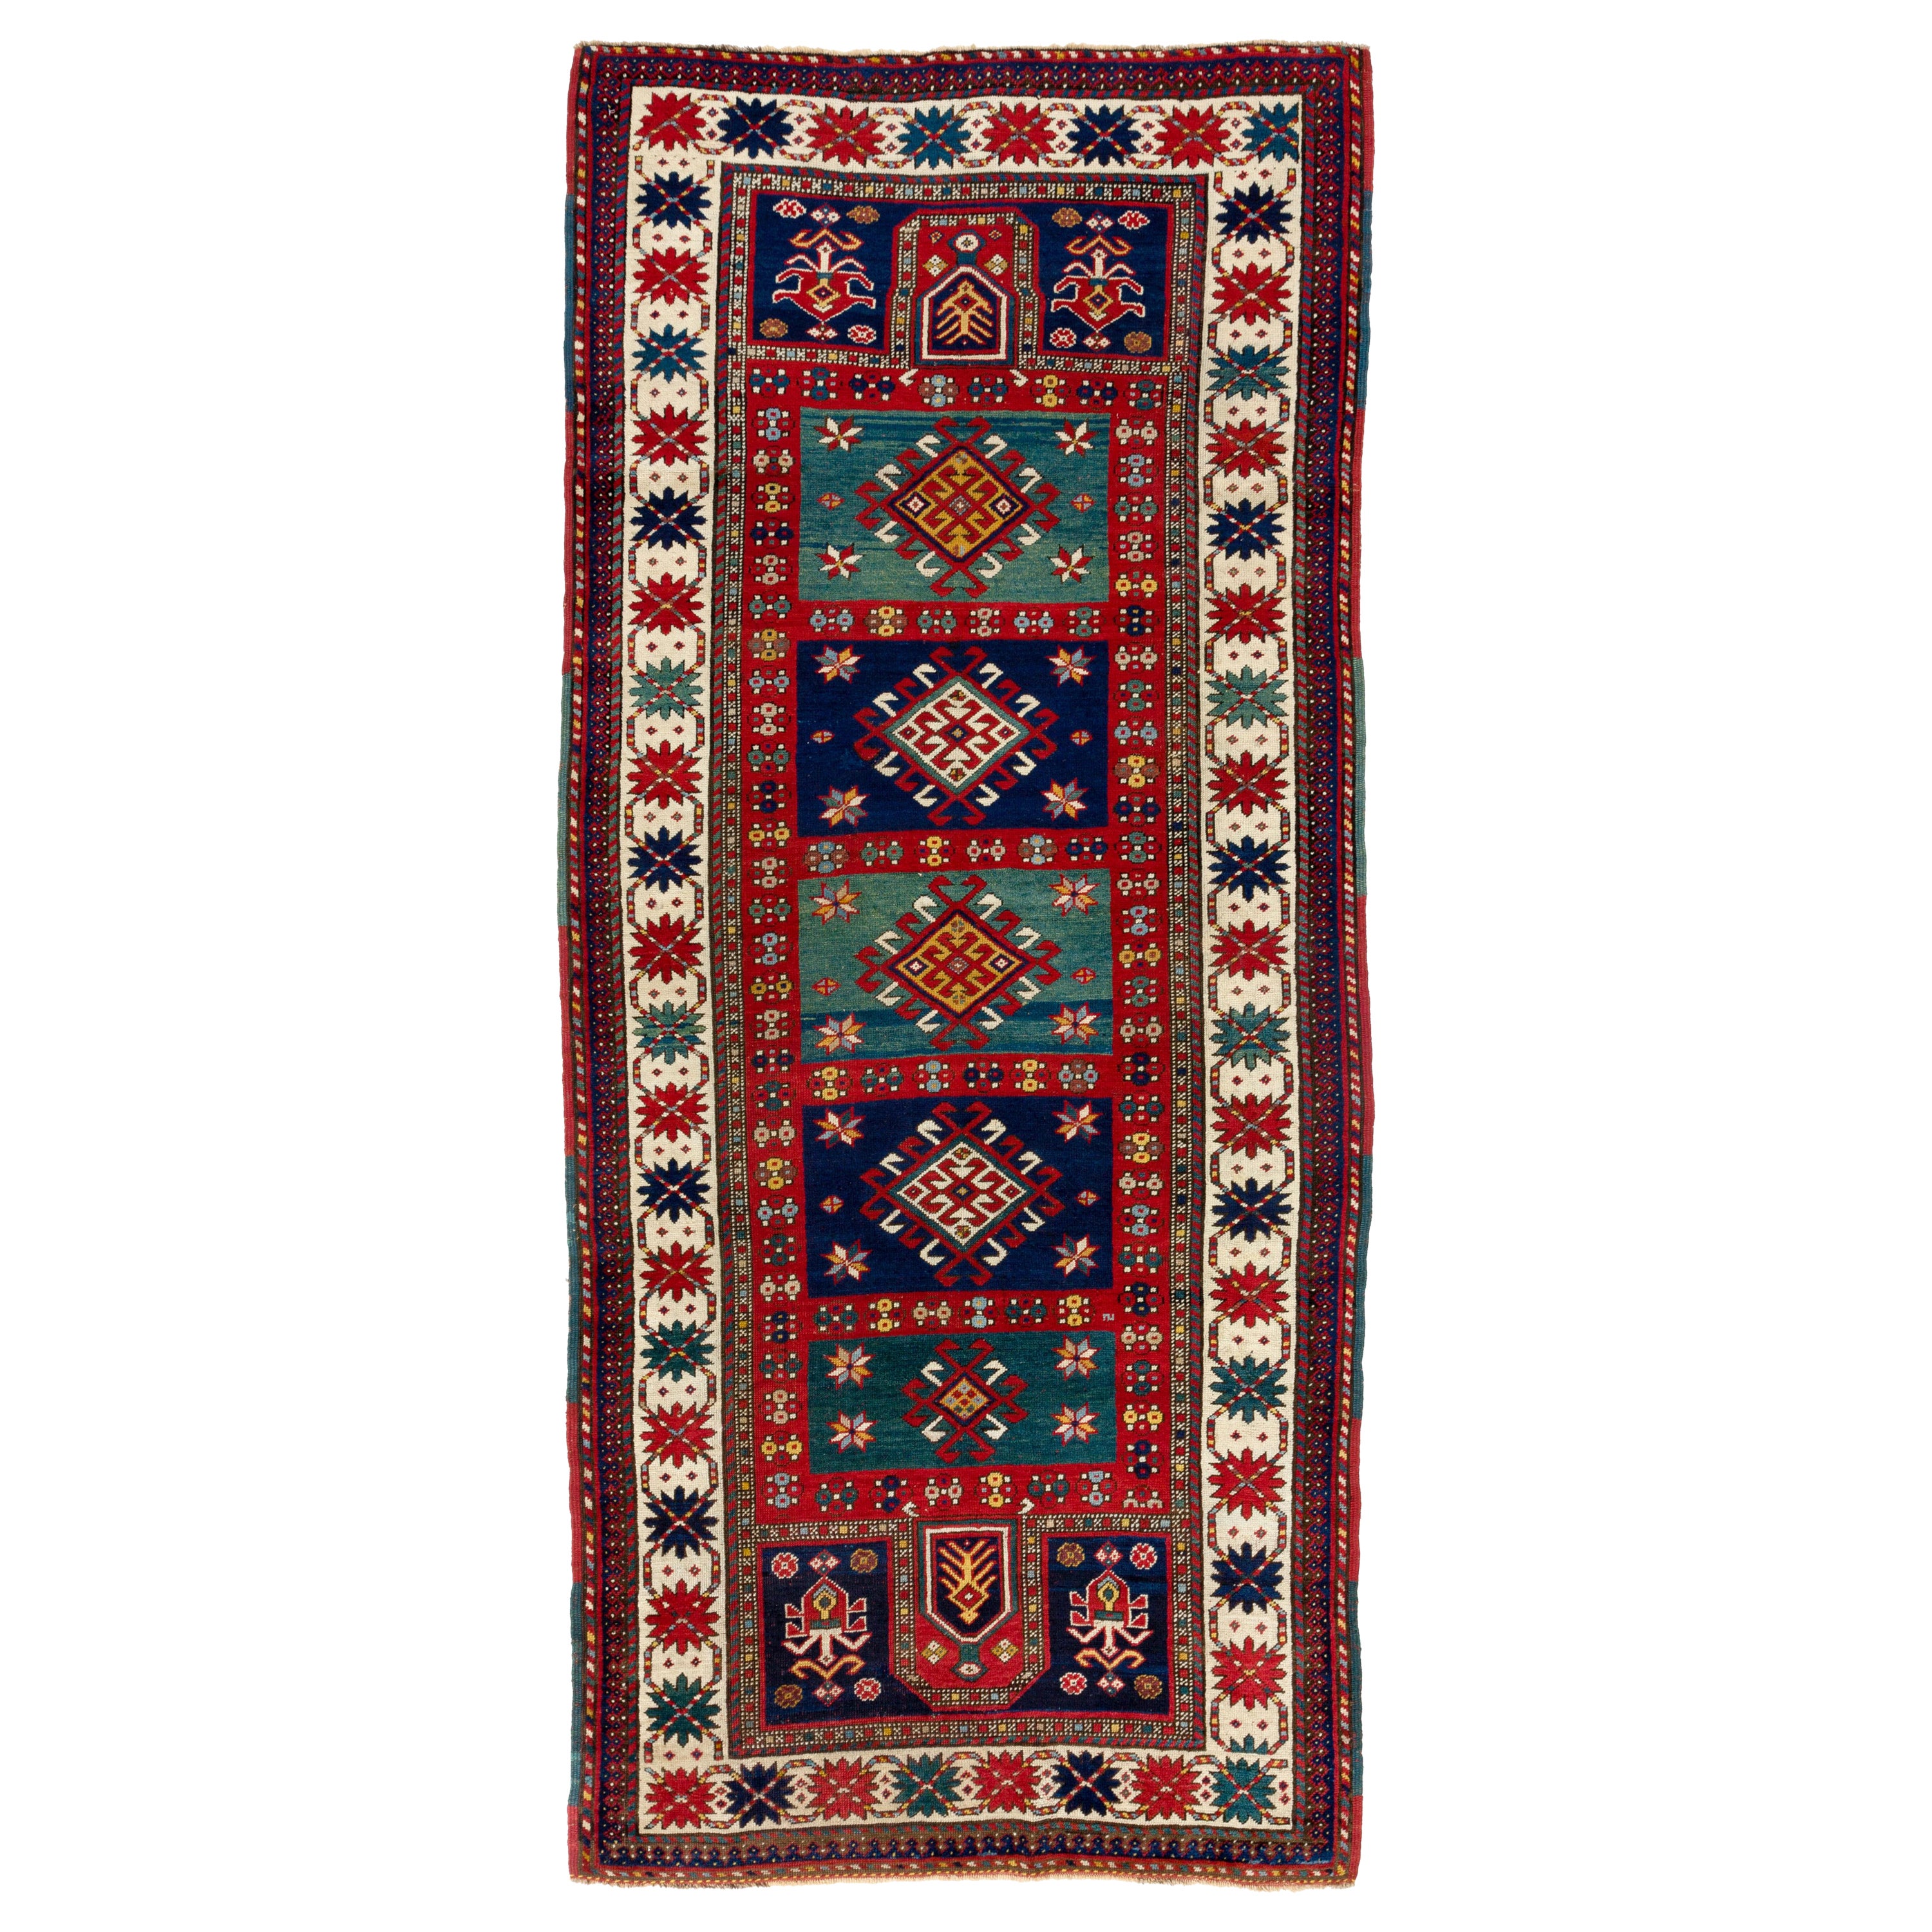 4.3x9.6 Ft Antique Caucasian Kazak Rug, Full Pile, Original Condition, Ca 1880